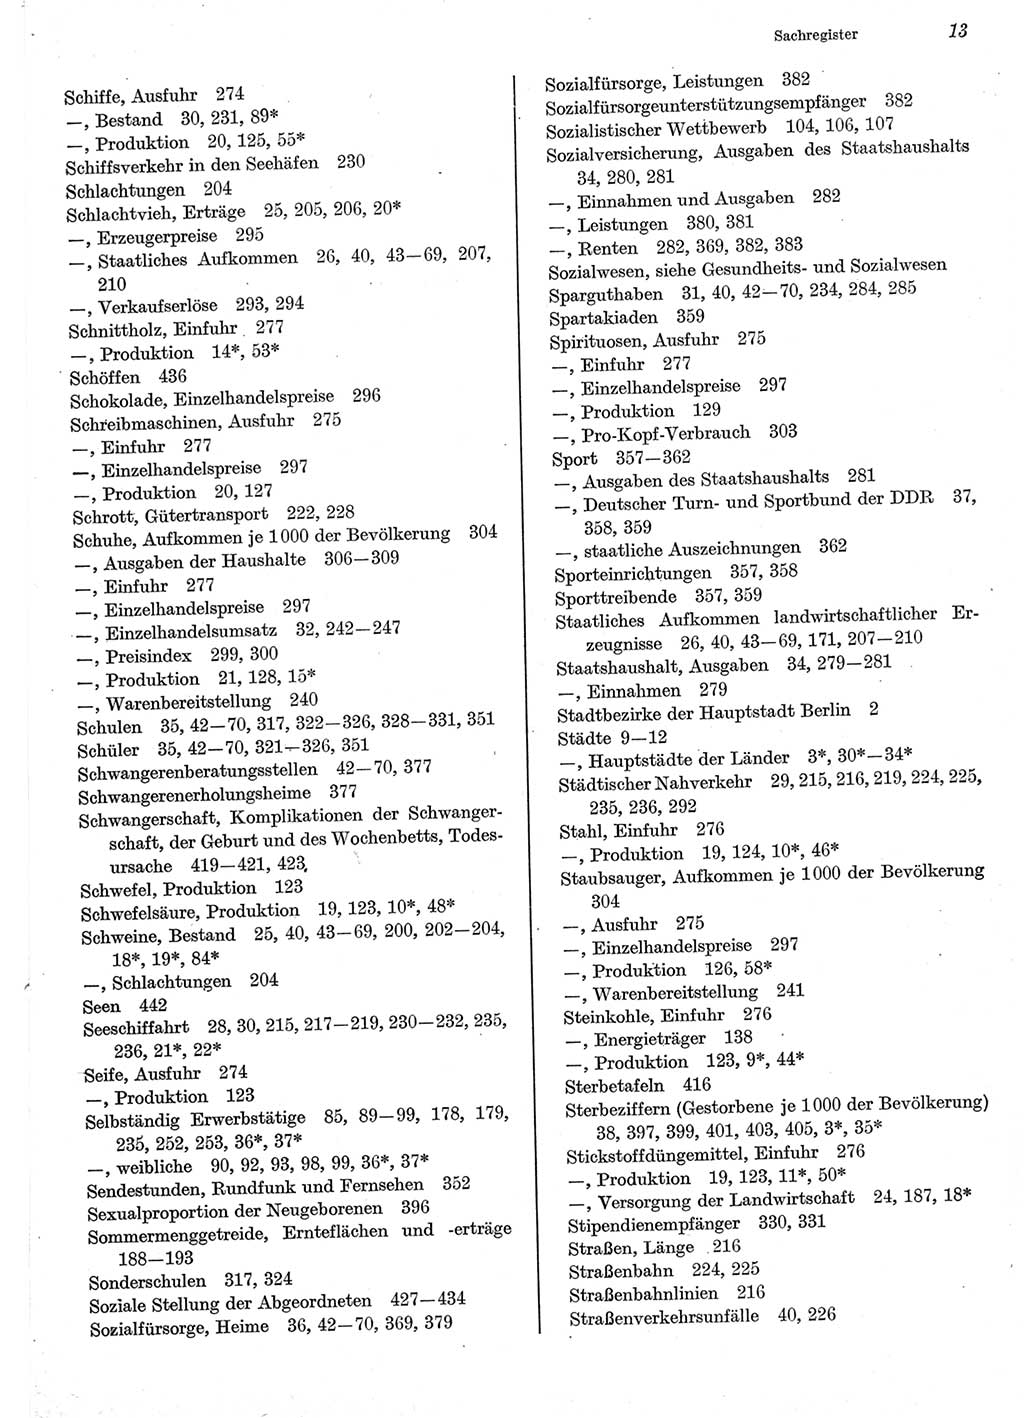 Statistisches Jahrbuch der Deutschen Demokratischen Republik (DDR) 1977, Seite 13 (Stat. Jb. DDR 1977, S. 13)